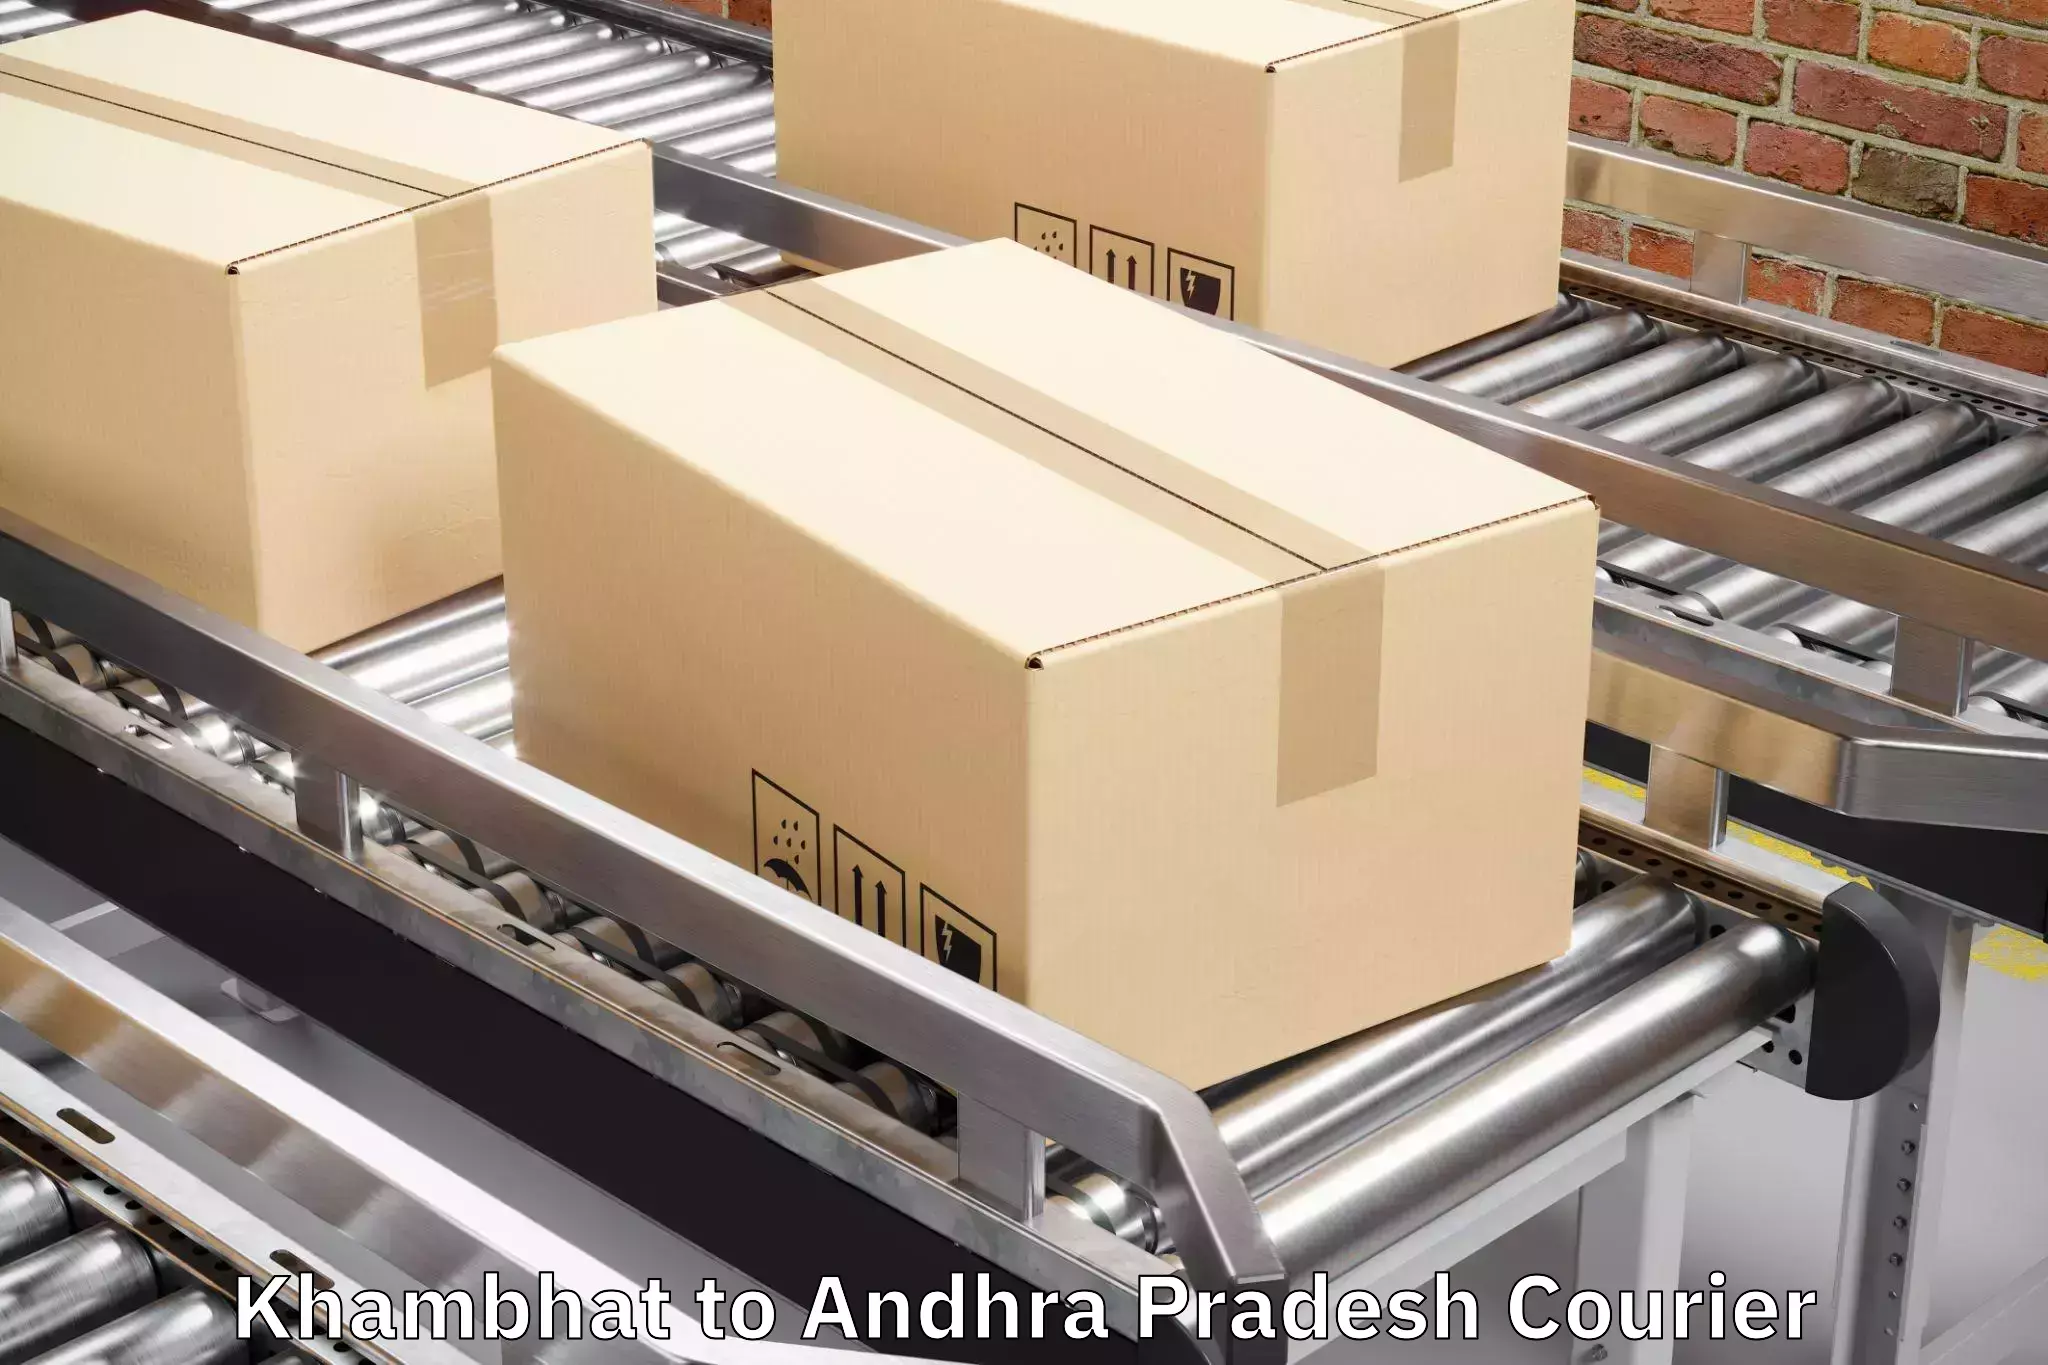 Luggage shipment strategy Khambhat to Visakhapatnam